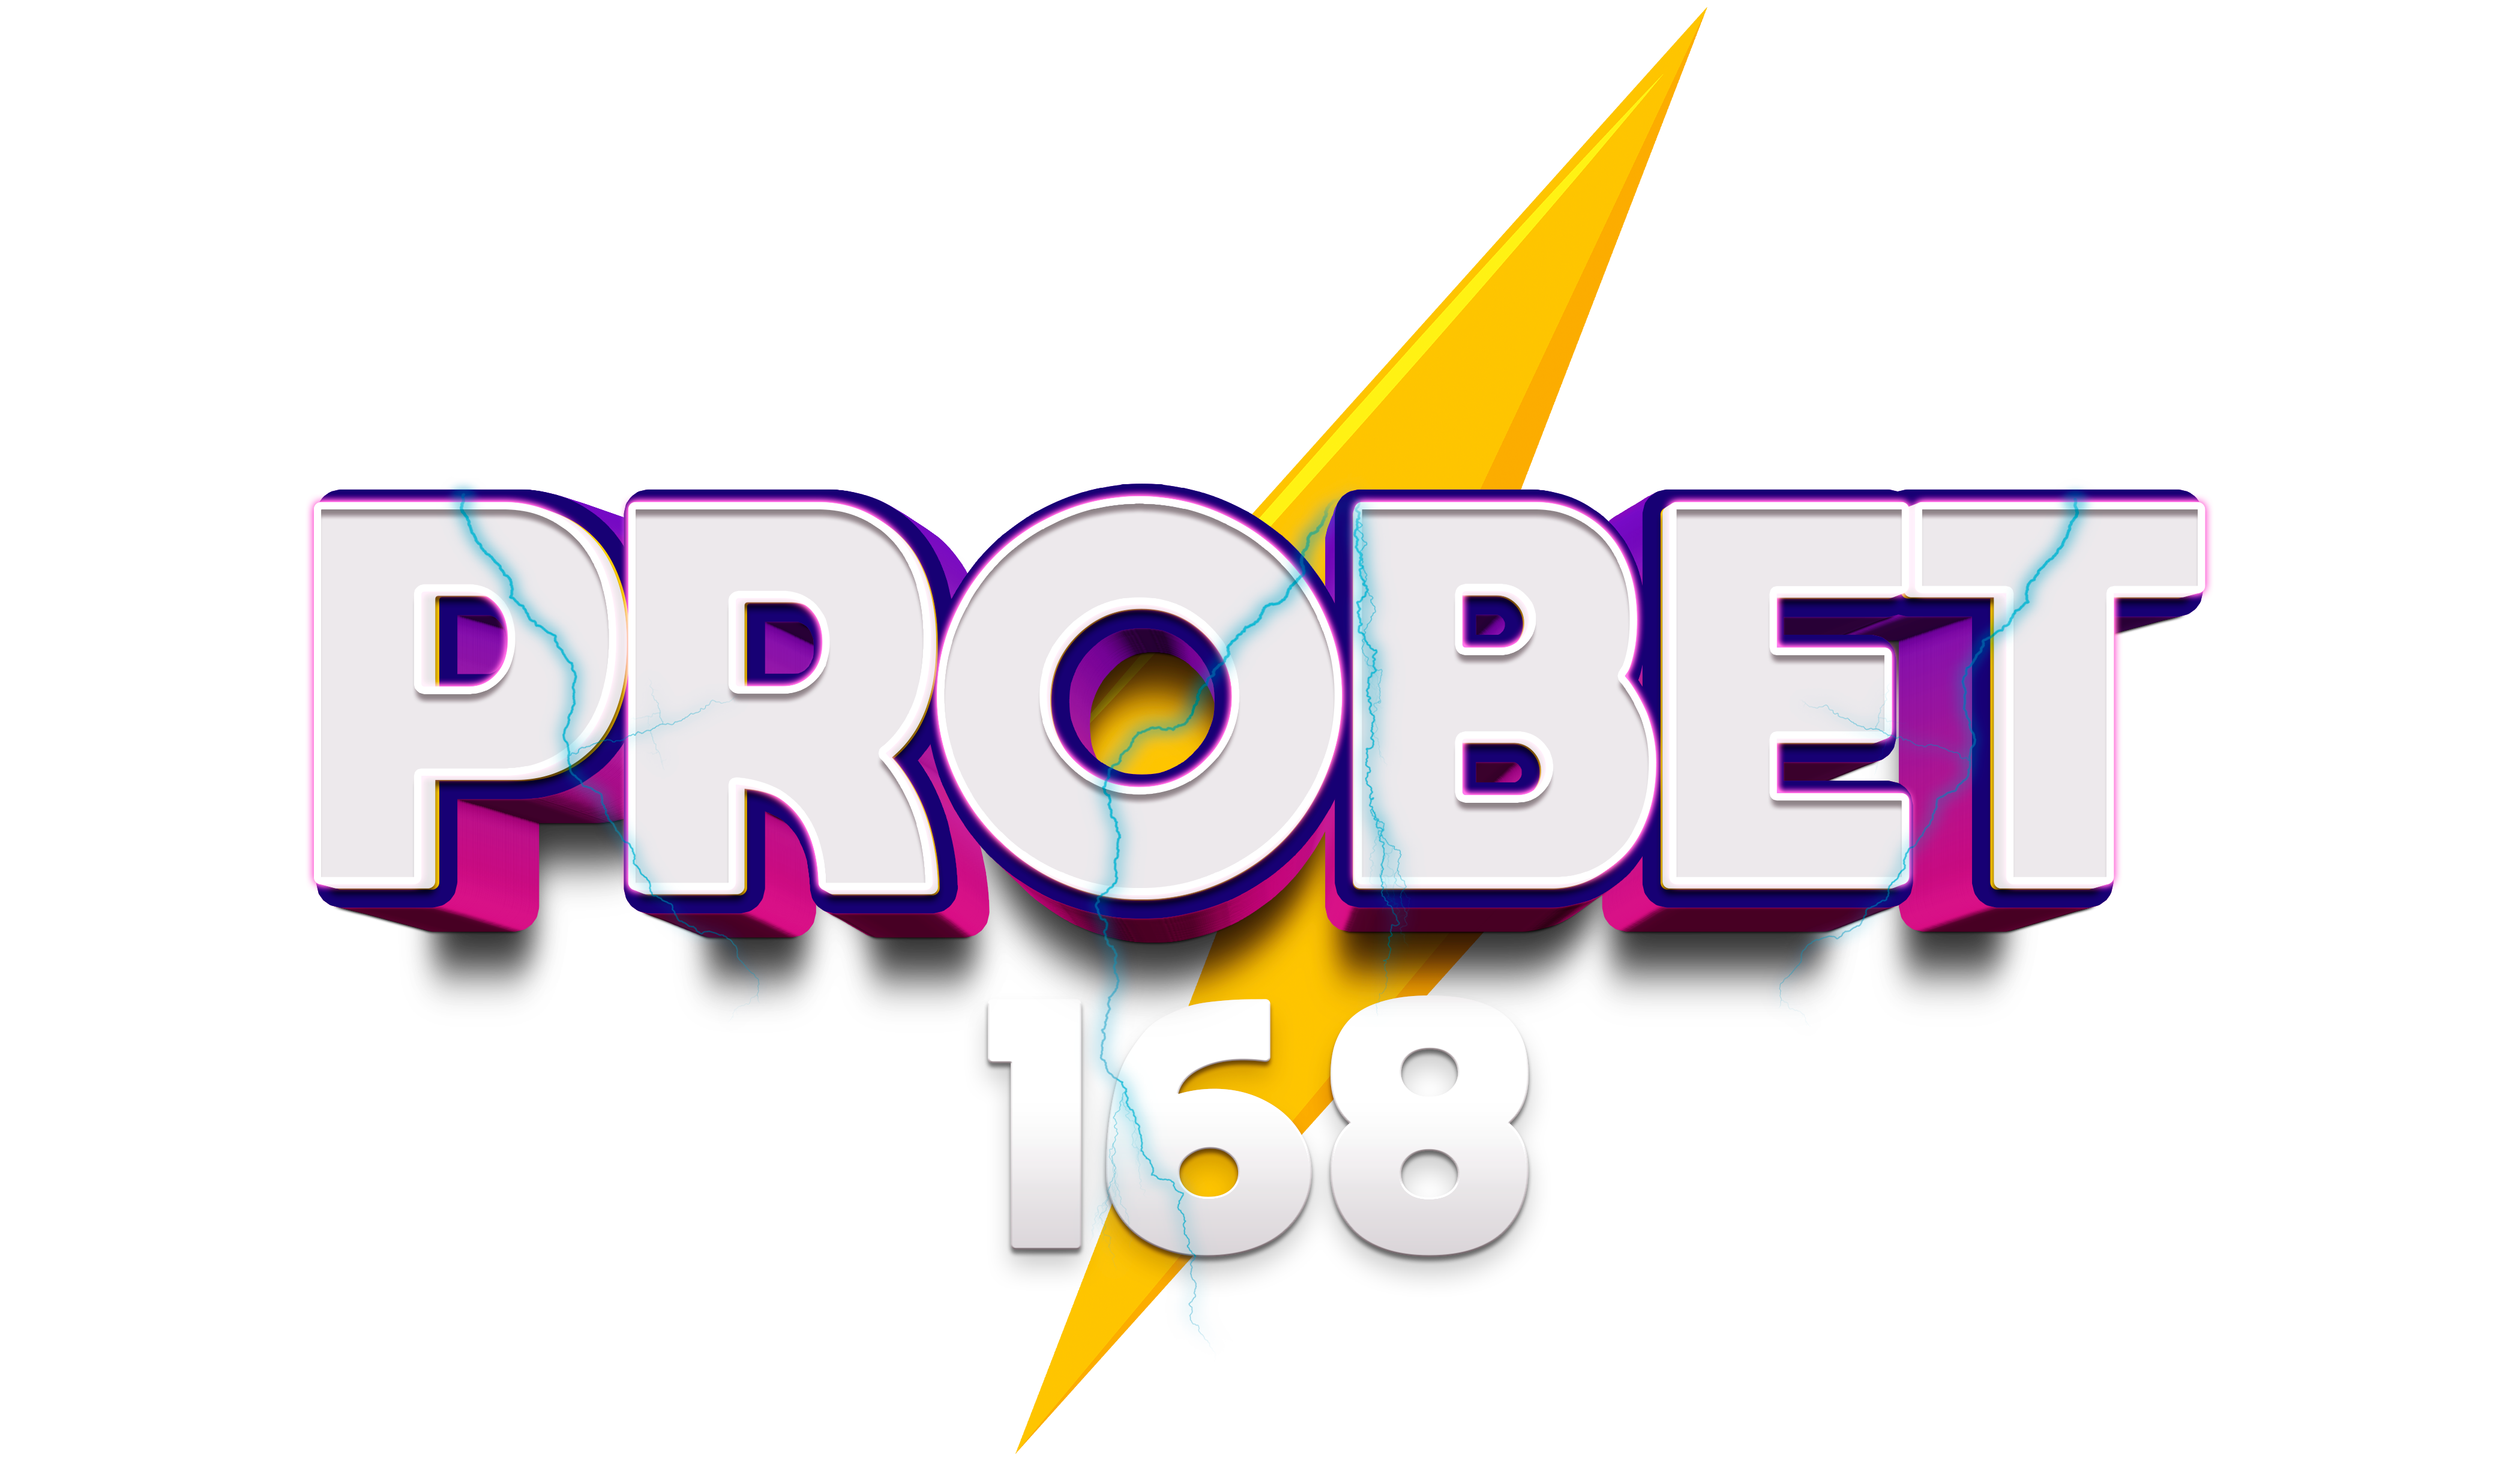 Probet168